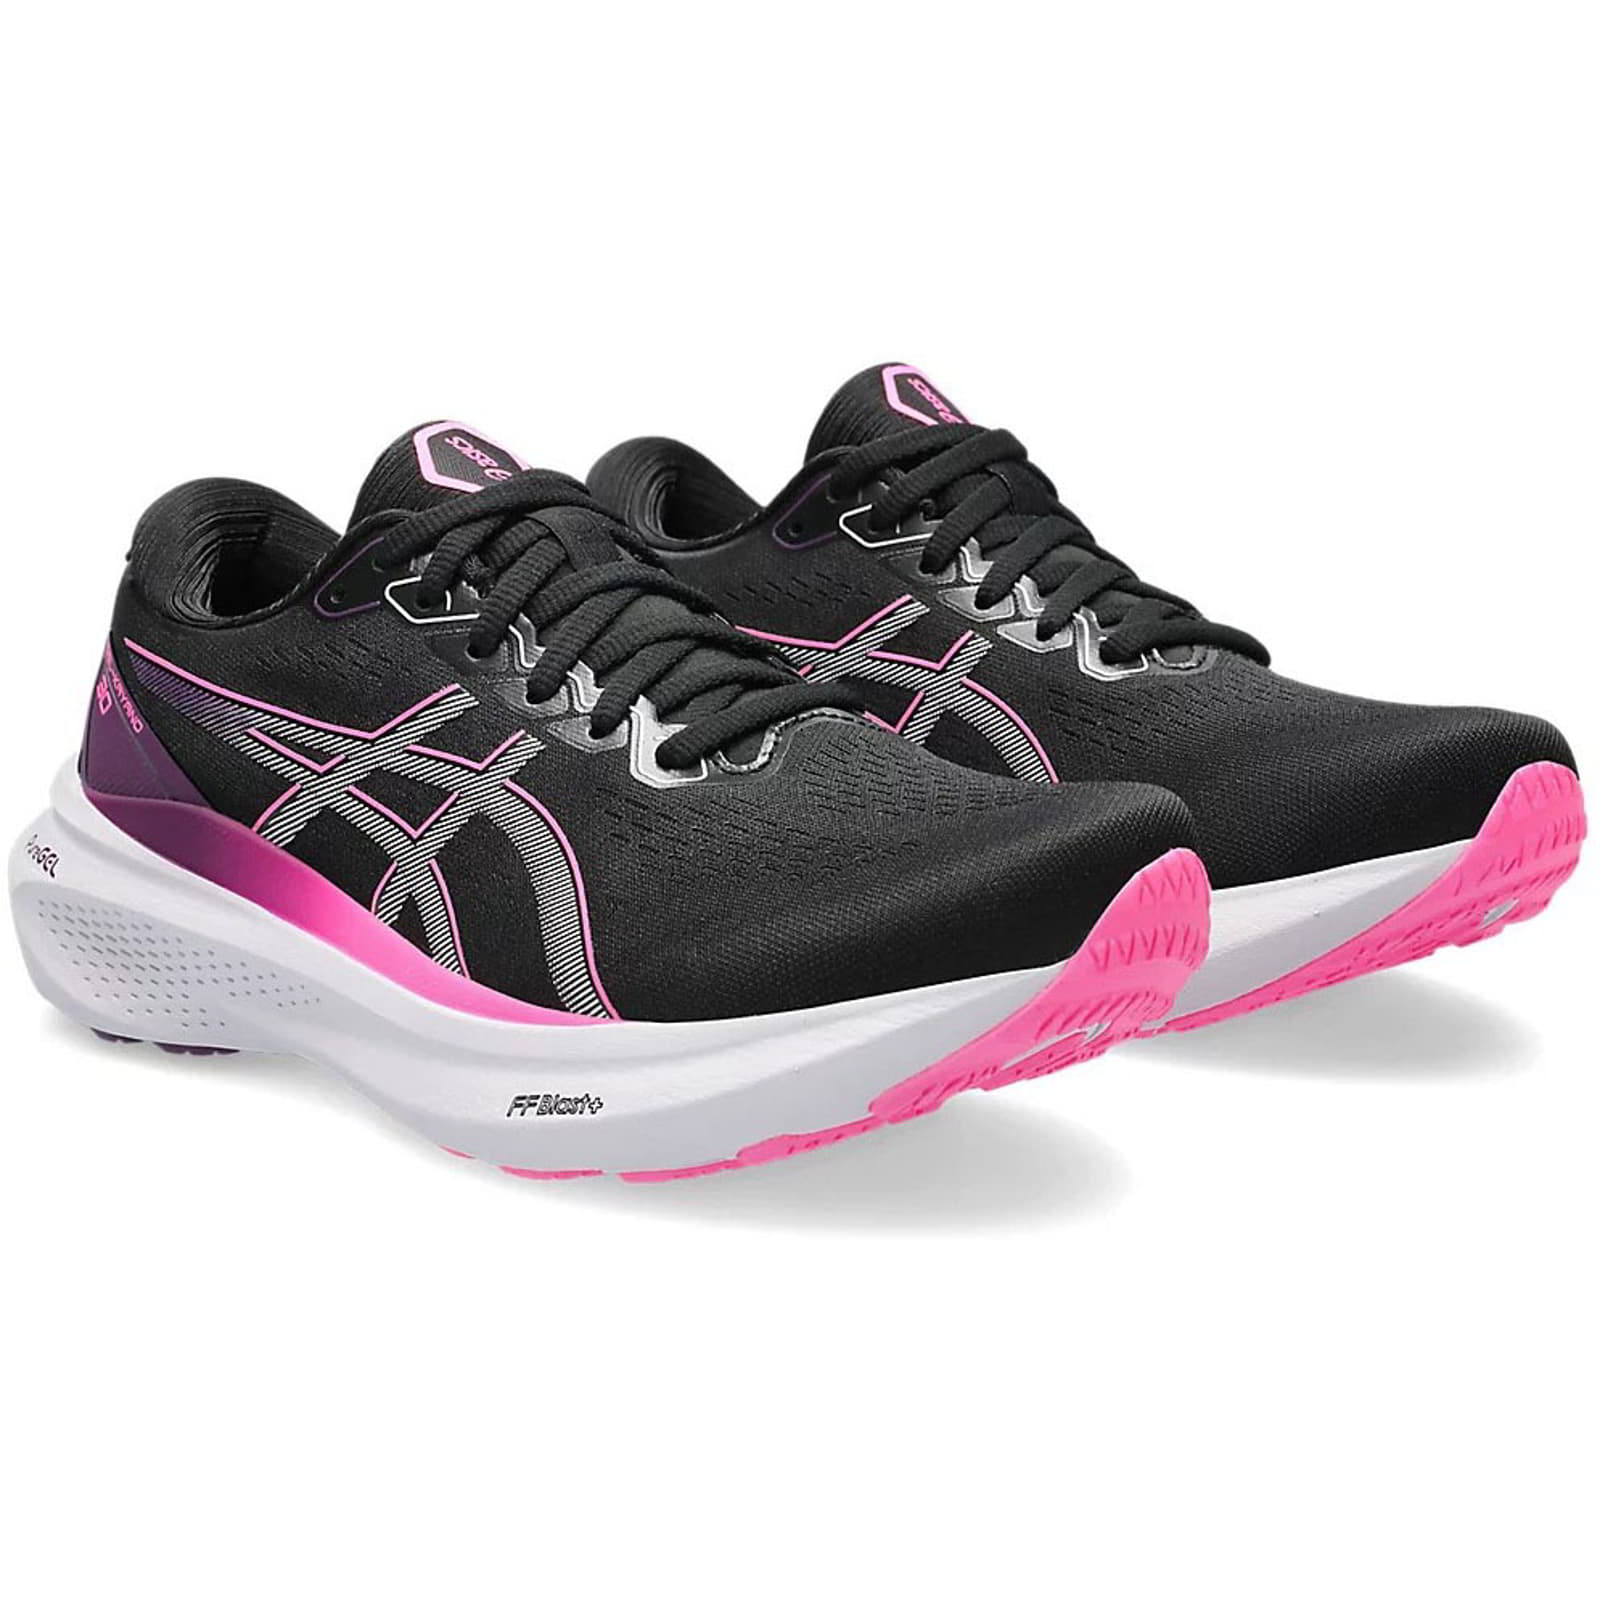 Asics Women's Gel Kayano 30 Running Shoes Trainers - UK 5